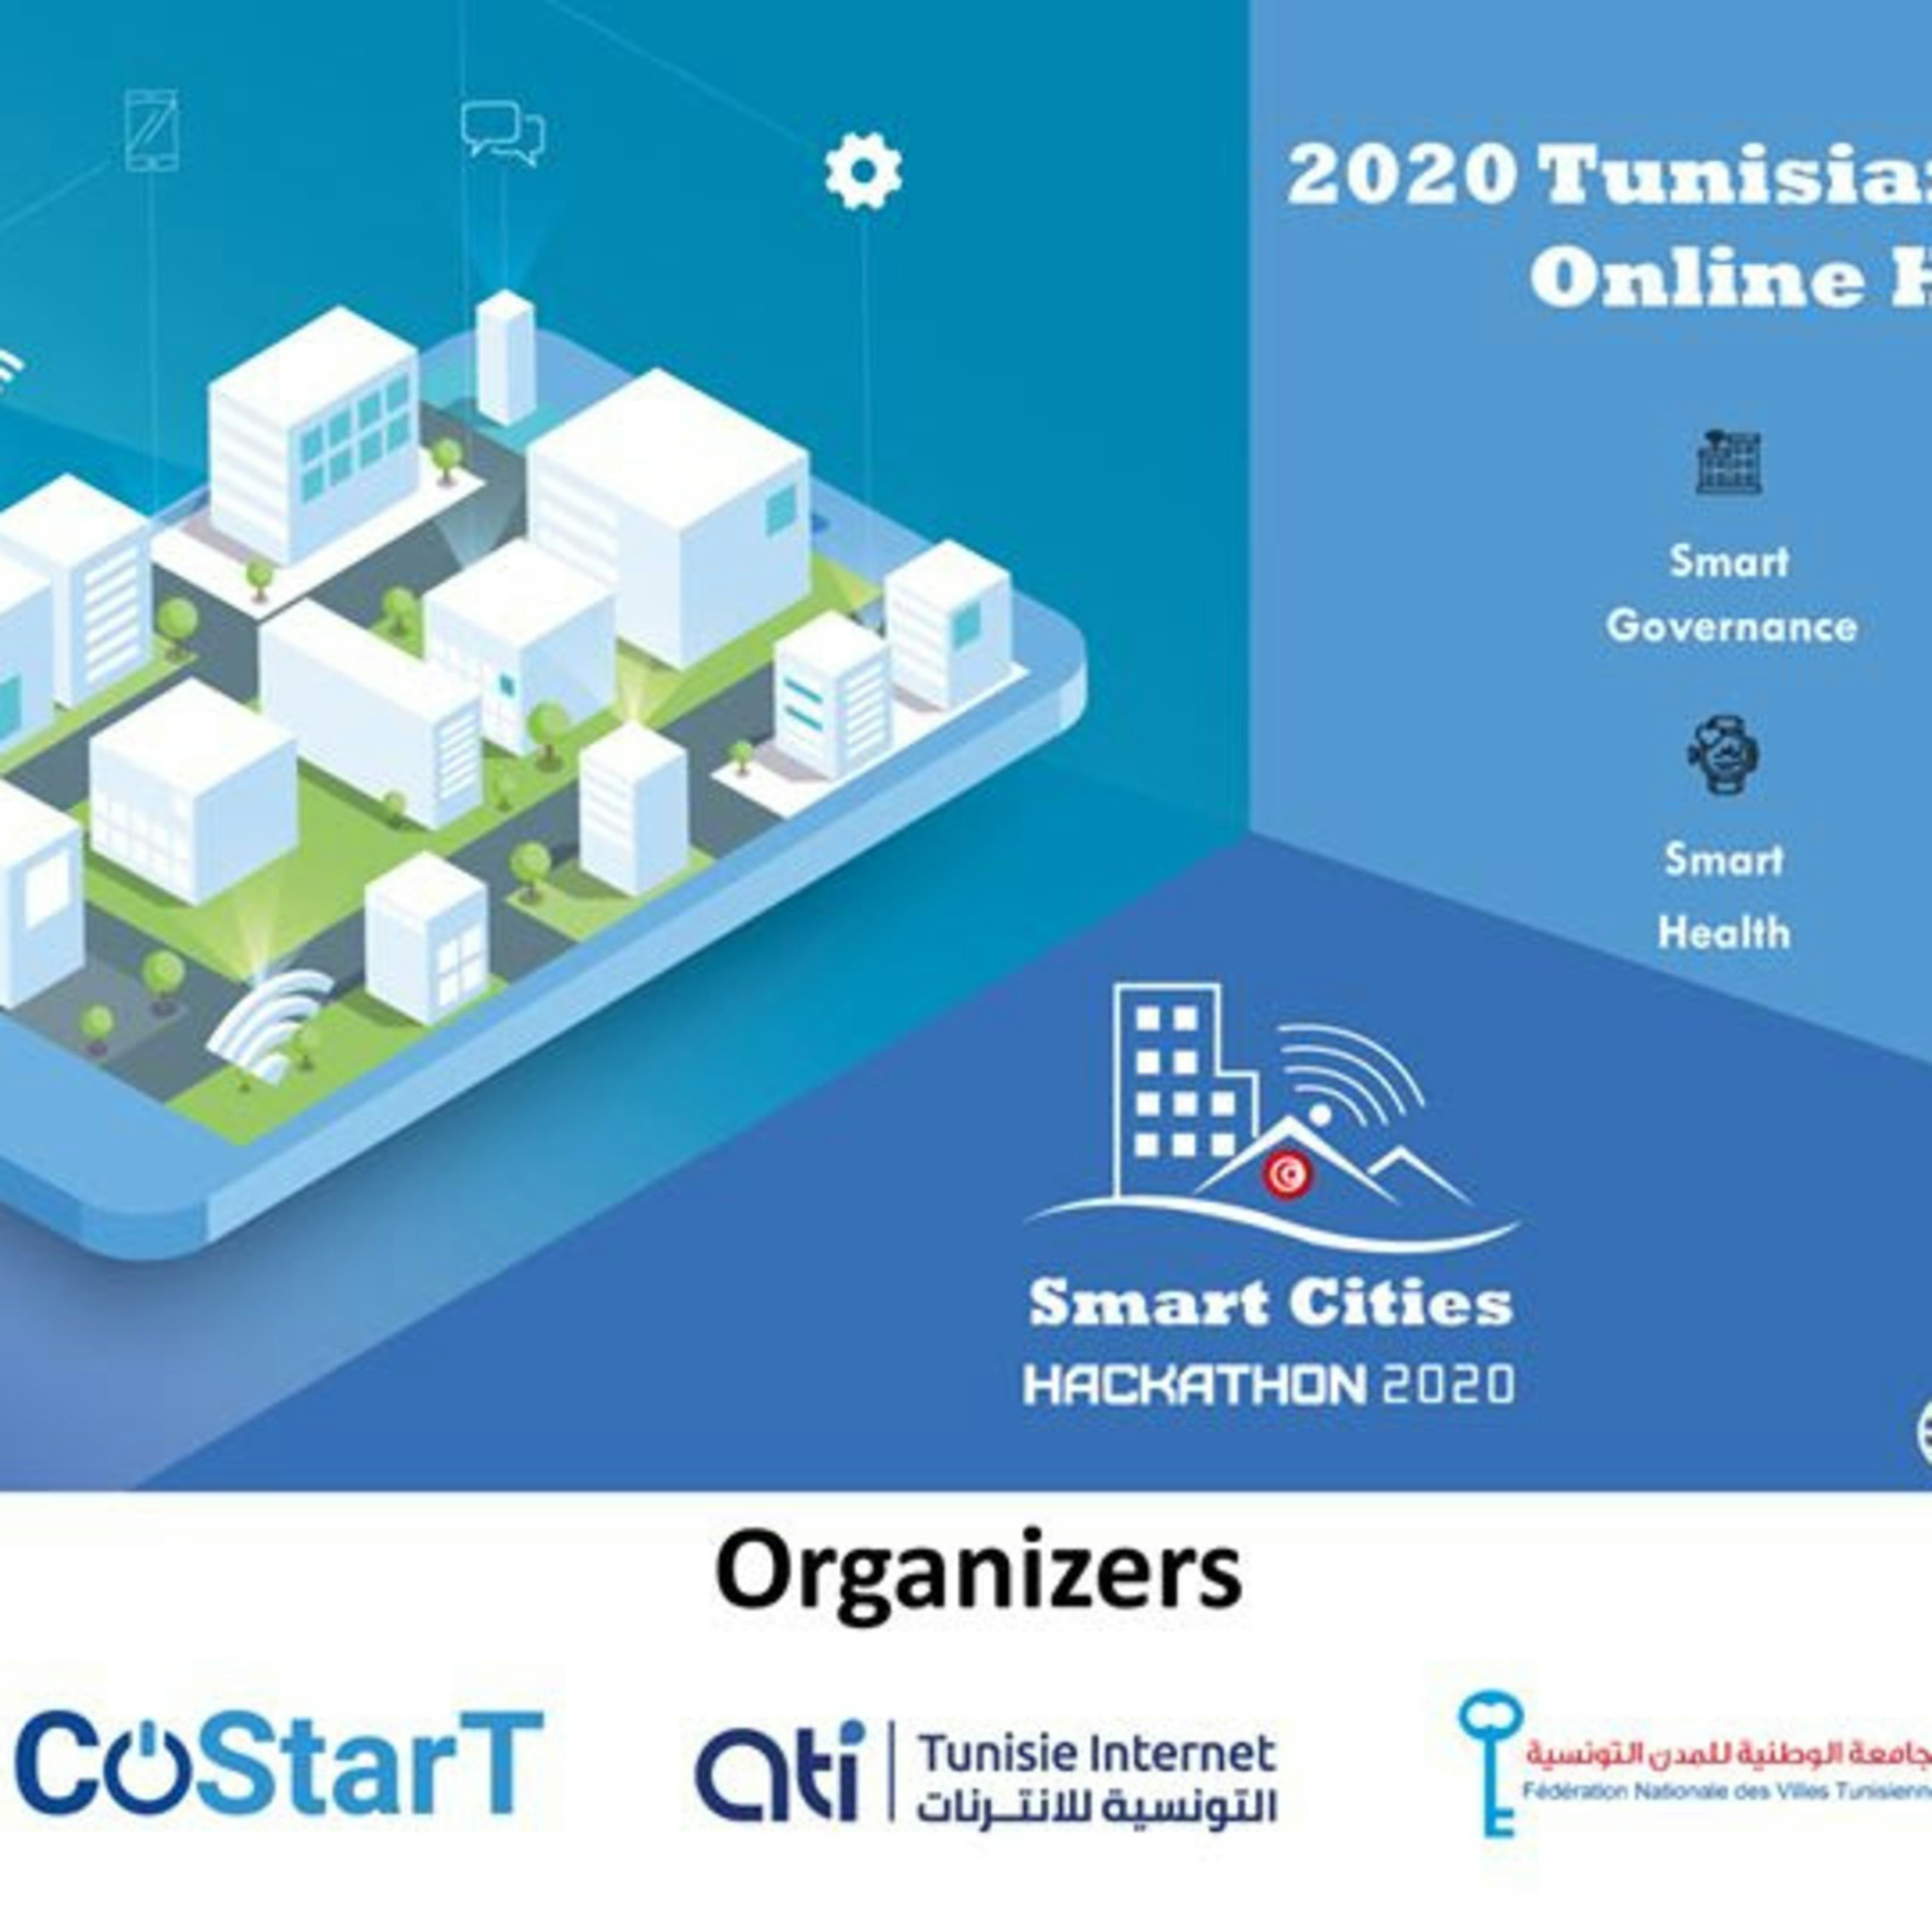 2020 Tunisian Smart Cities Online Hackathon | Google Developer Groups